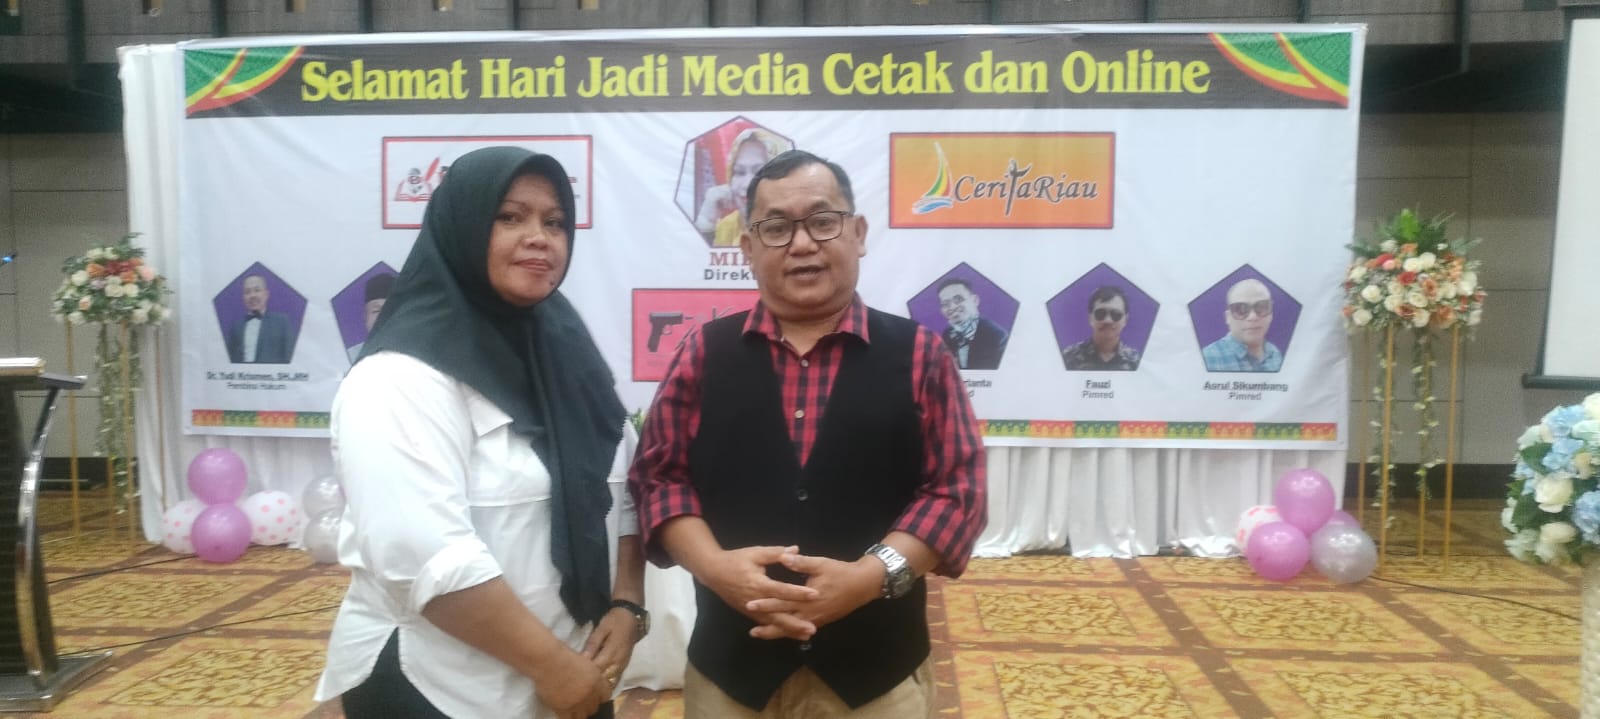 Dihadiri Rekan Seprofesi Dan Para Pejabat Di Pekanbaru, Karmila Rayakan 3 Tahun Media Online Miliknya Di Hotel Furaya